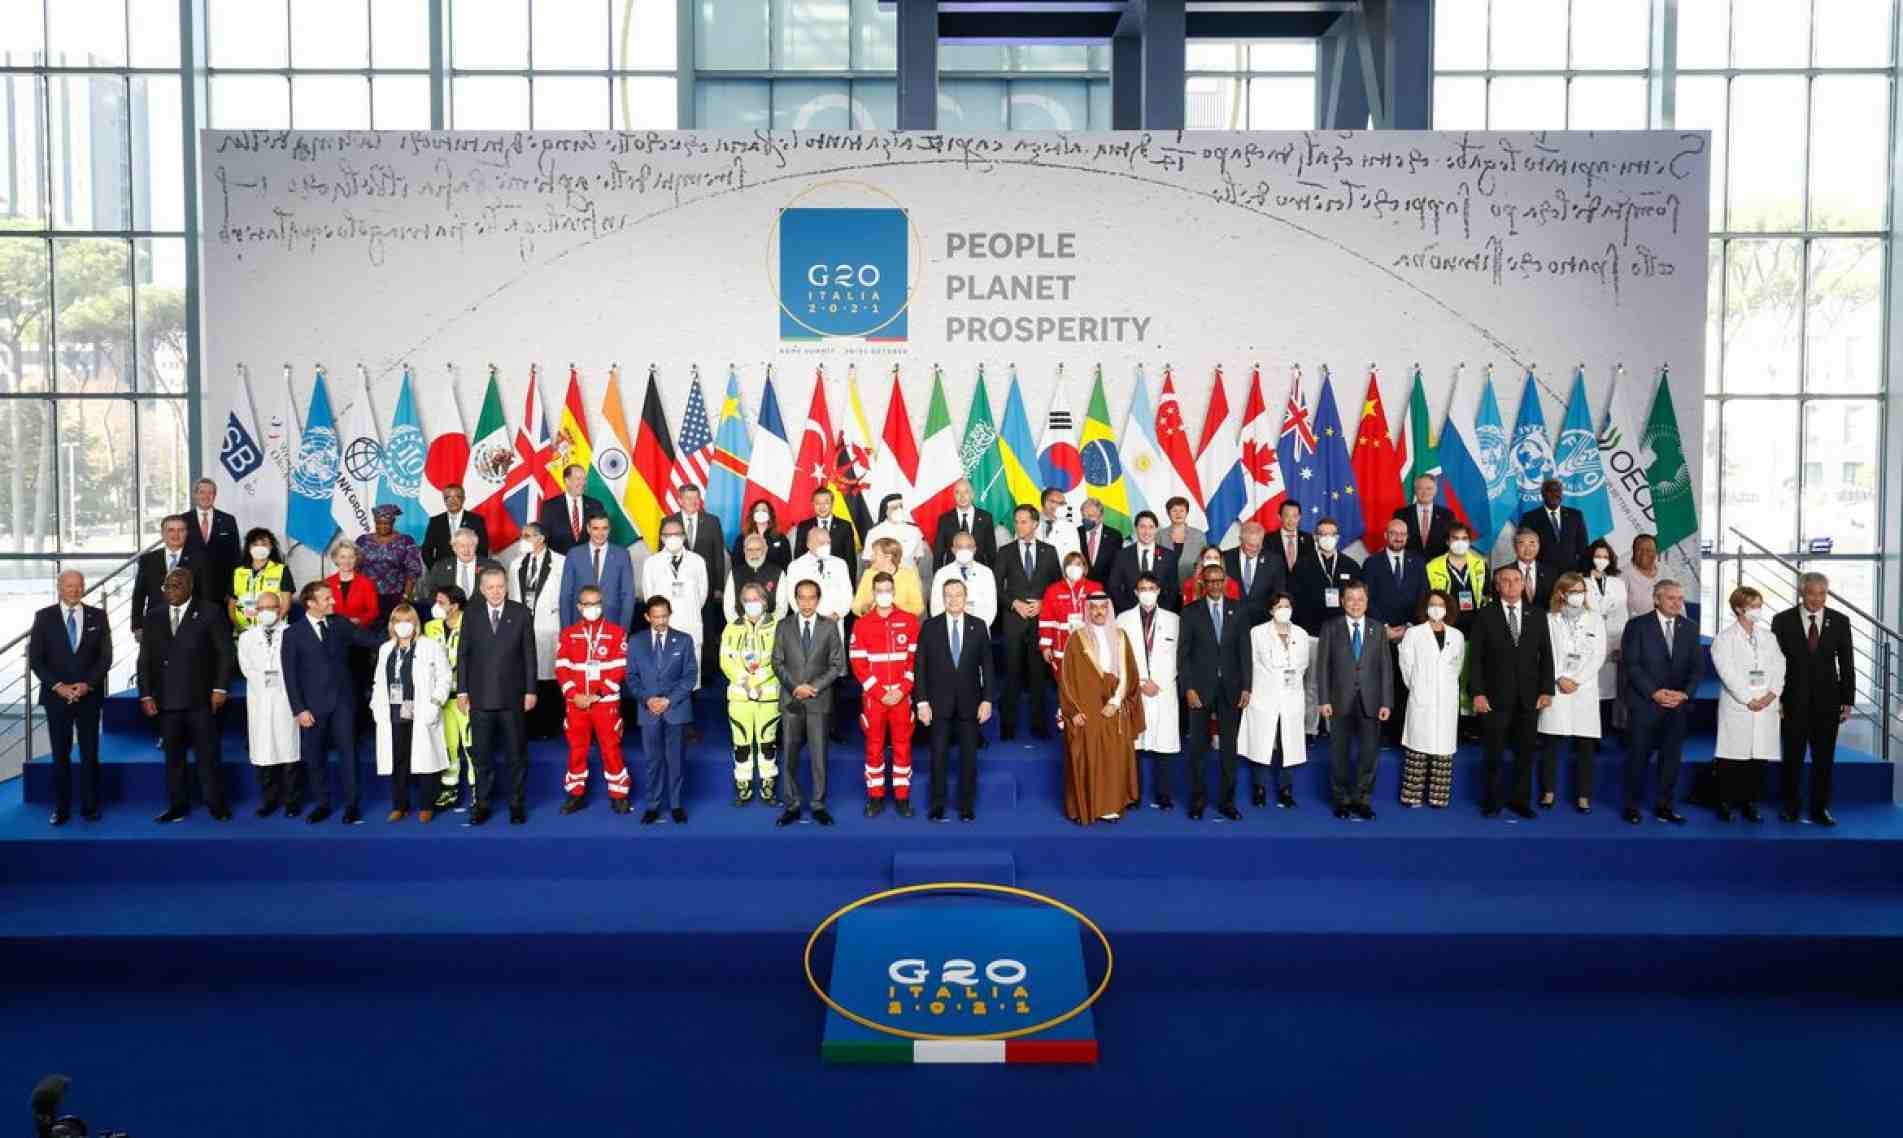  Fotografia Oficial com os Chefes de Delegação do G20.
